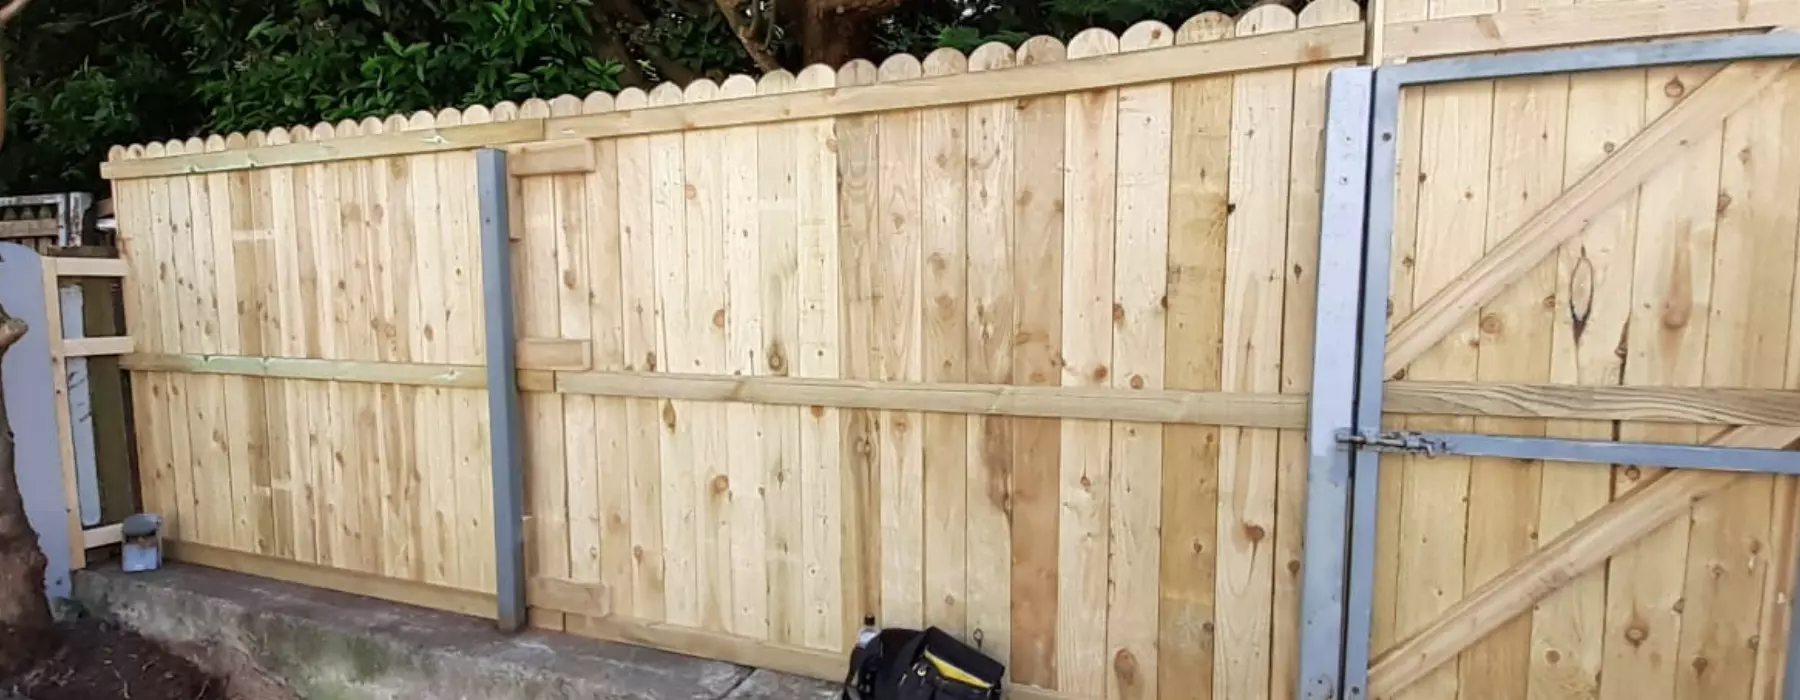 Garden Fence Repair